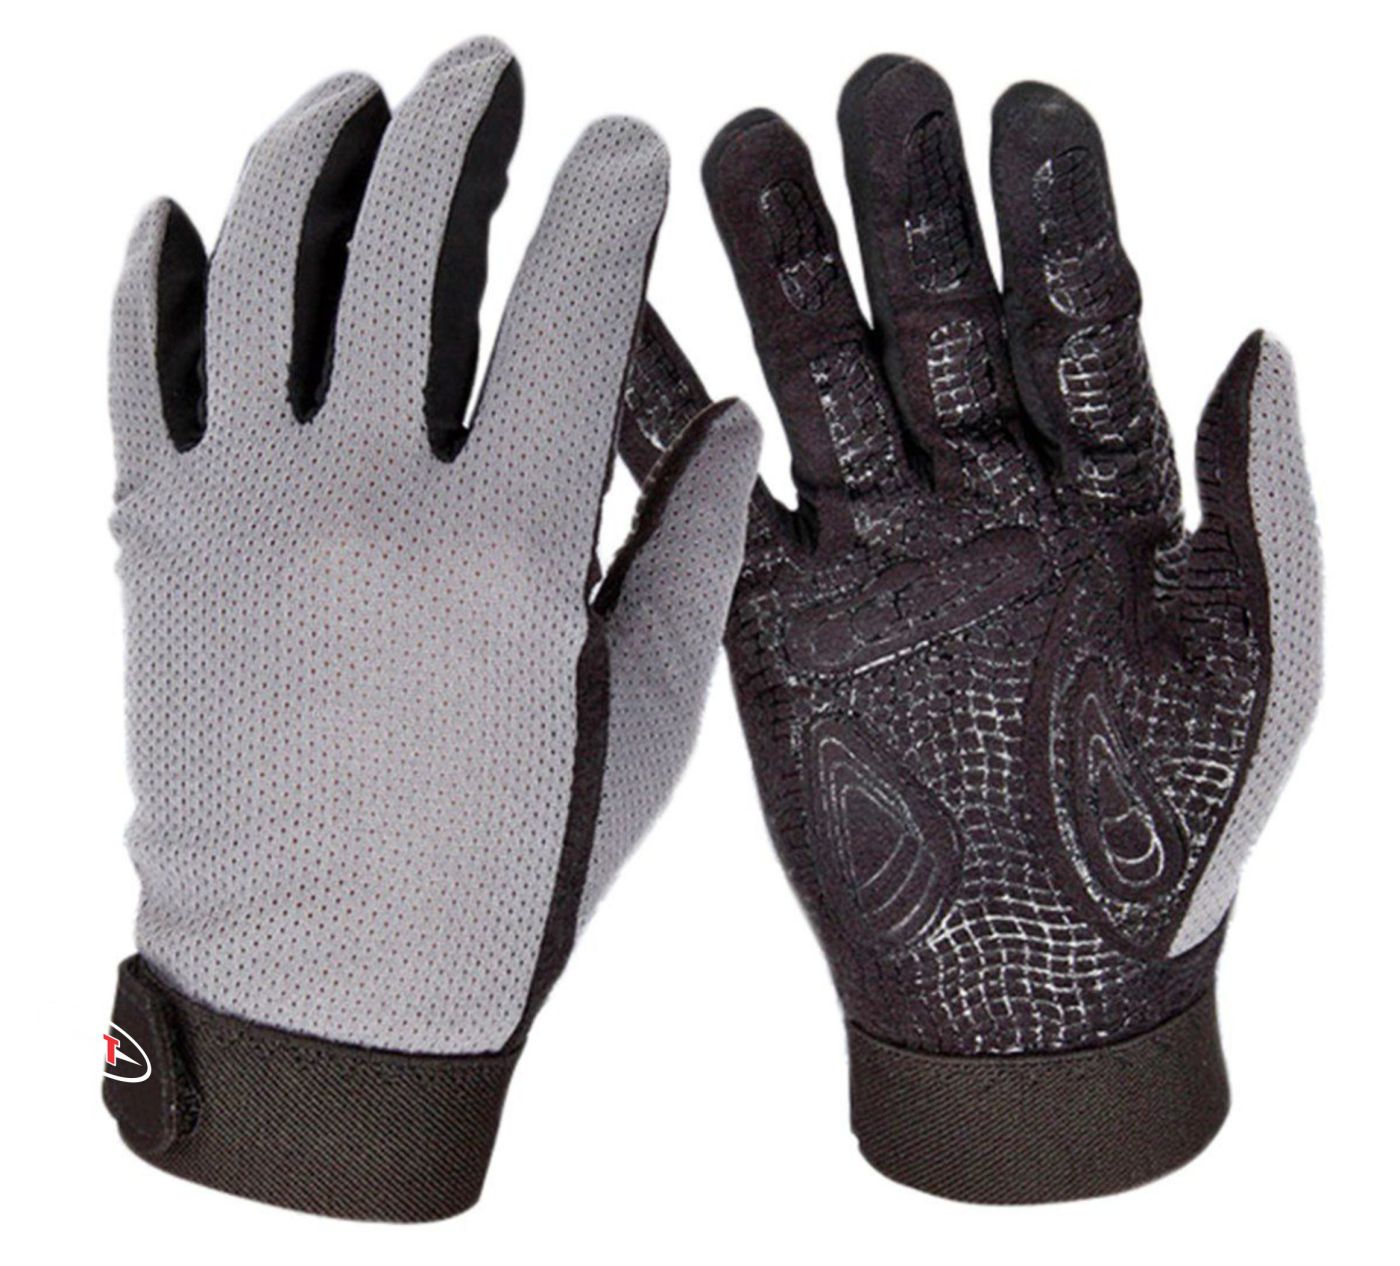 Full finger Gloves - ACS-1566